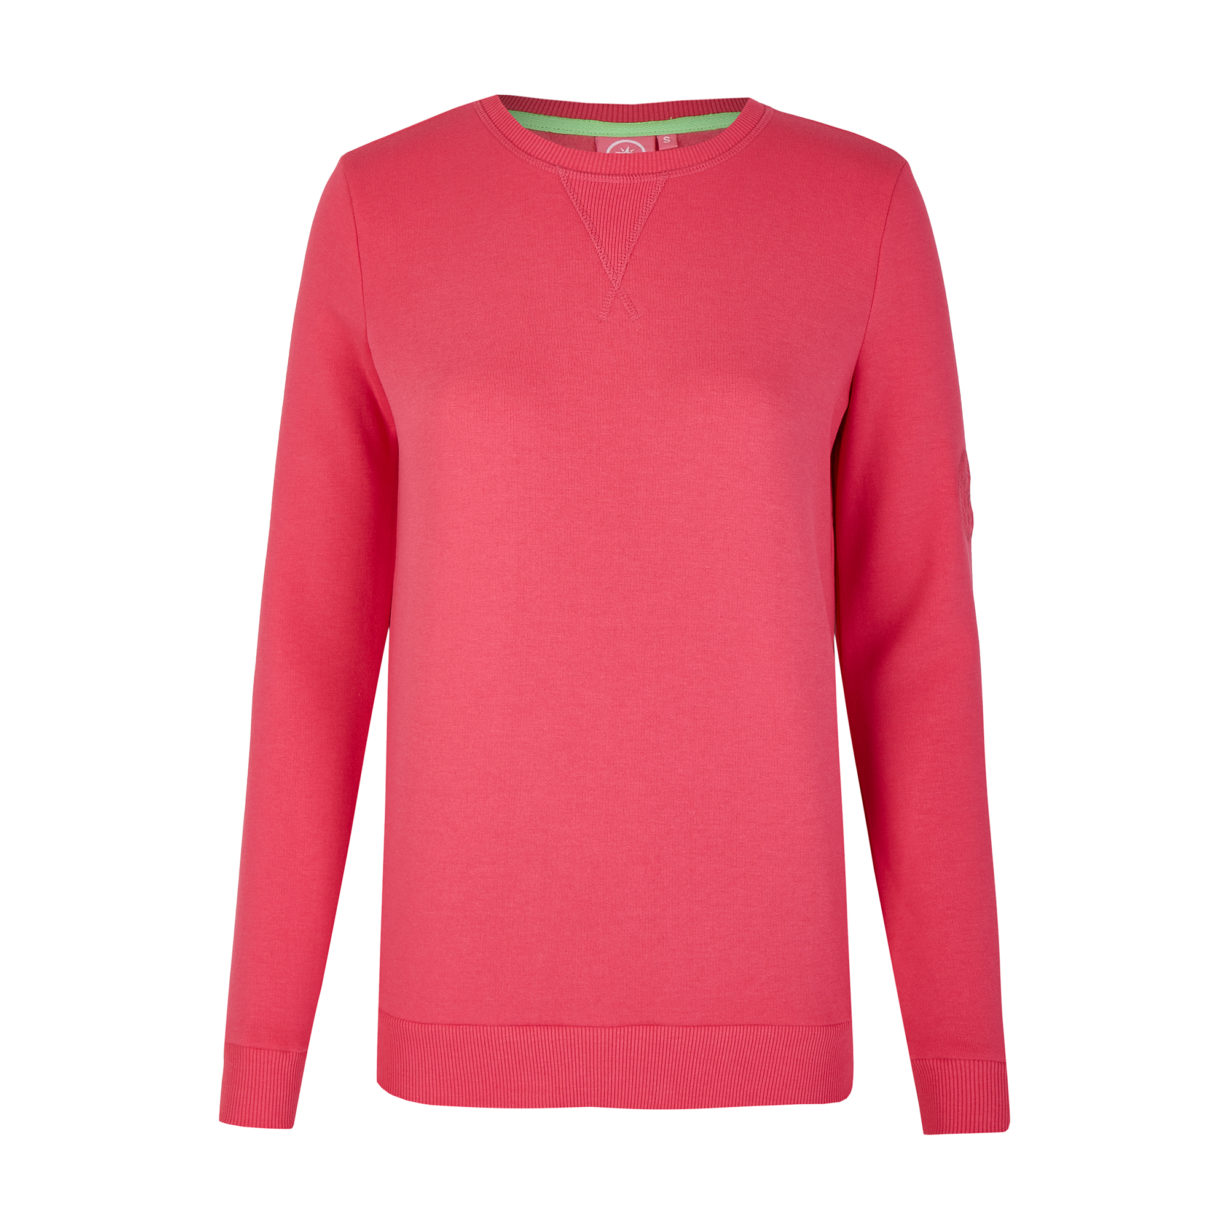 Adele - Sweatshirt Pink